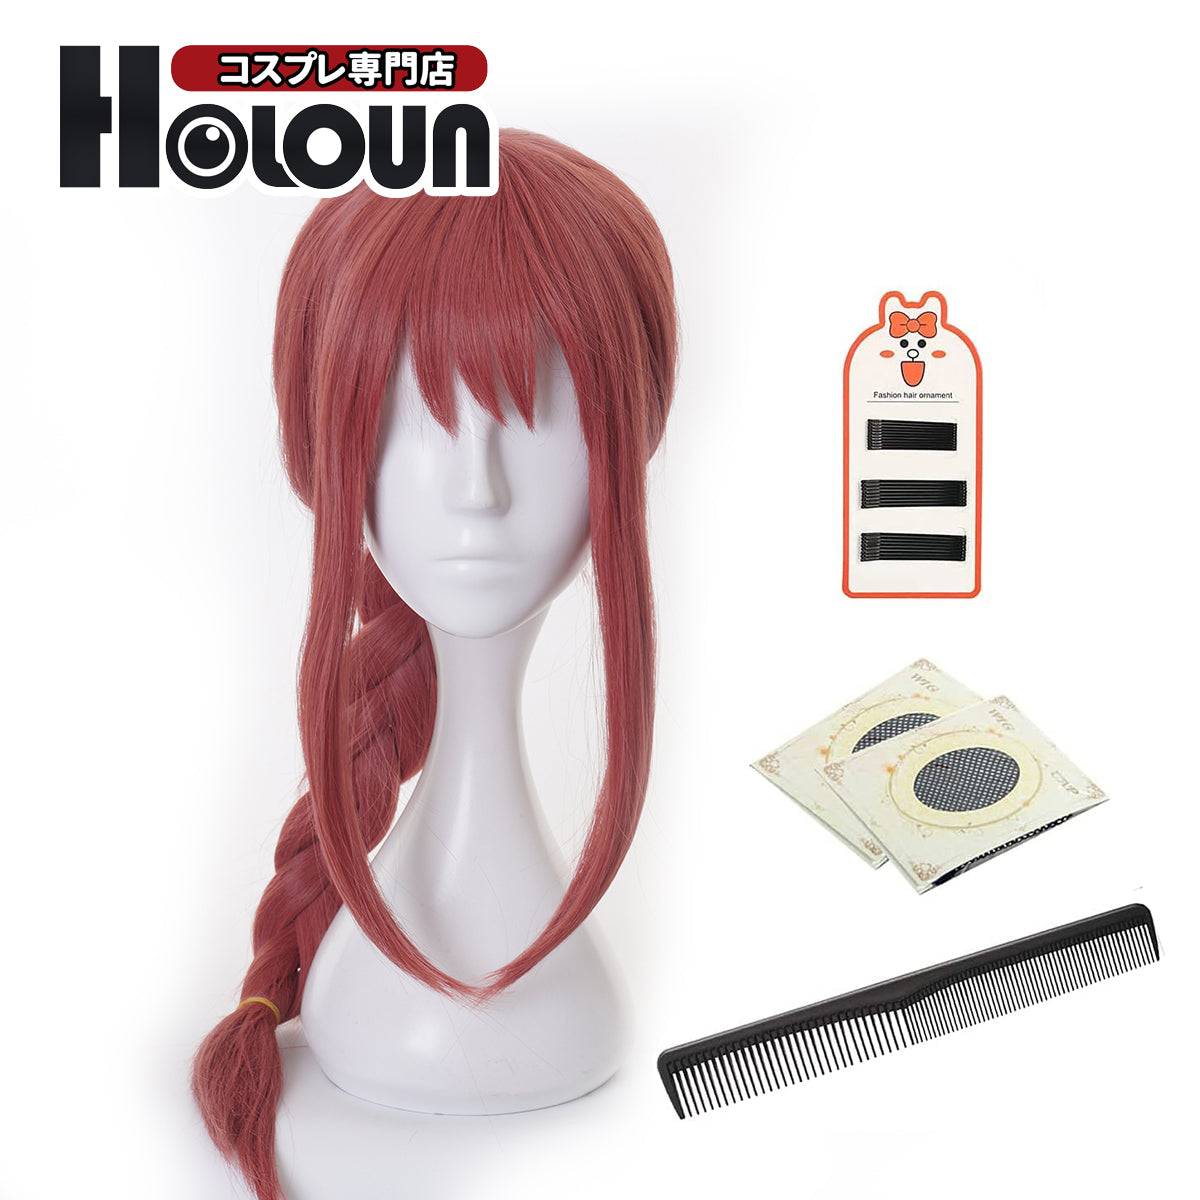 HOLOUN Anime Cosplay Universal Wig For Chainsaw Makima Fake Hair Halloween Christmas Party Gift New